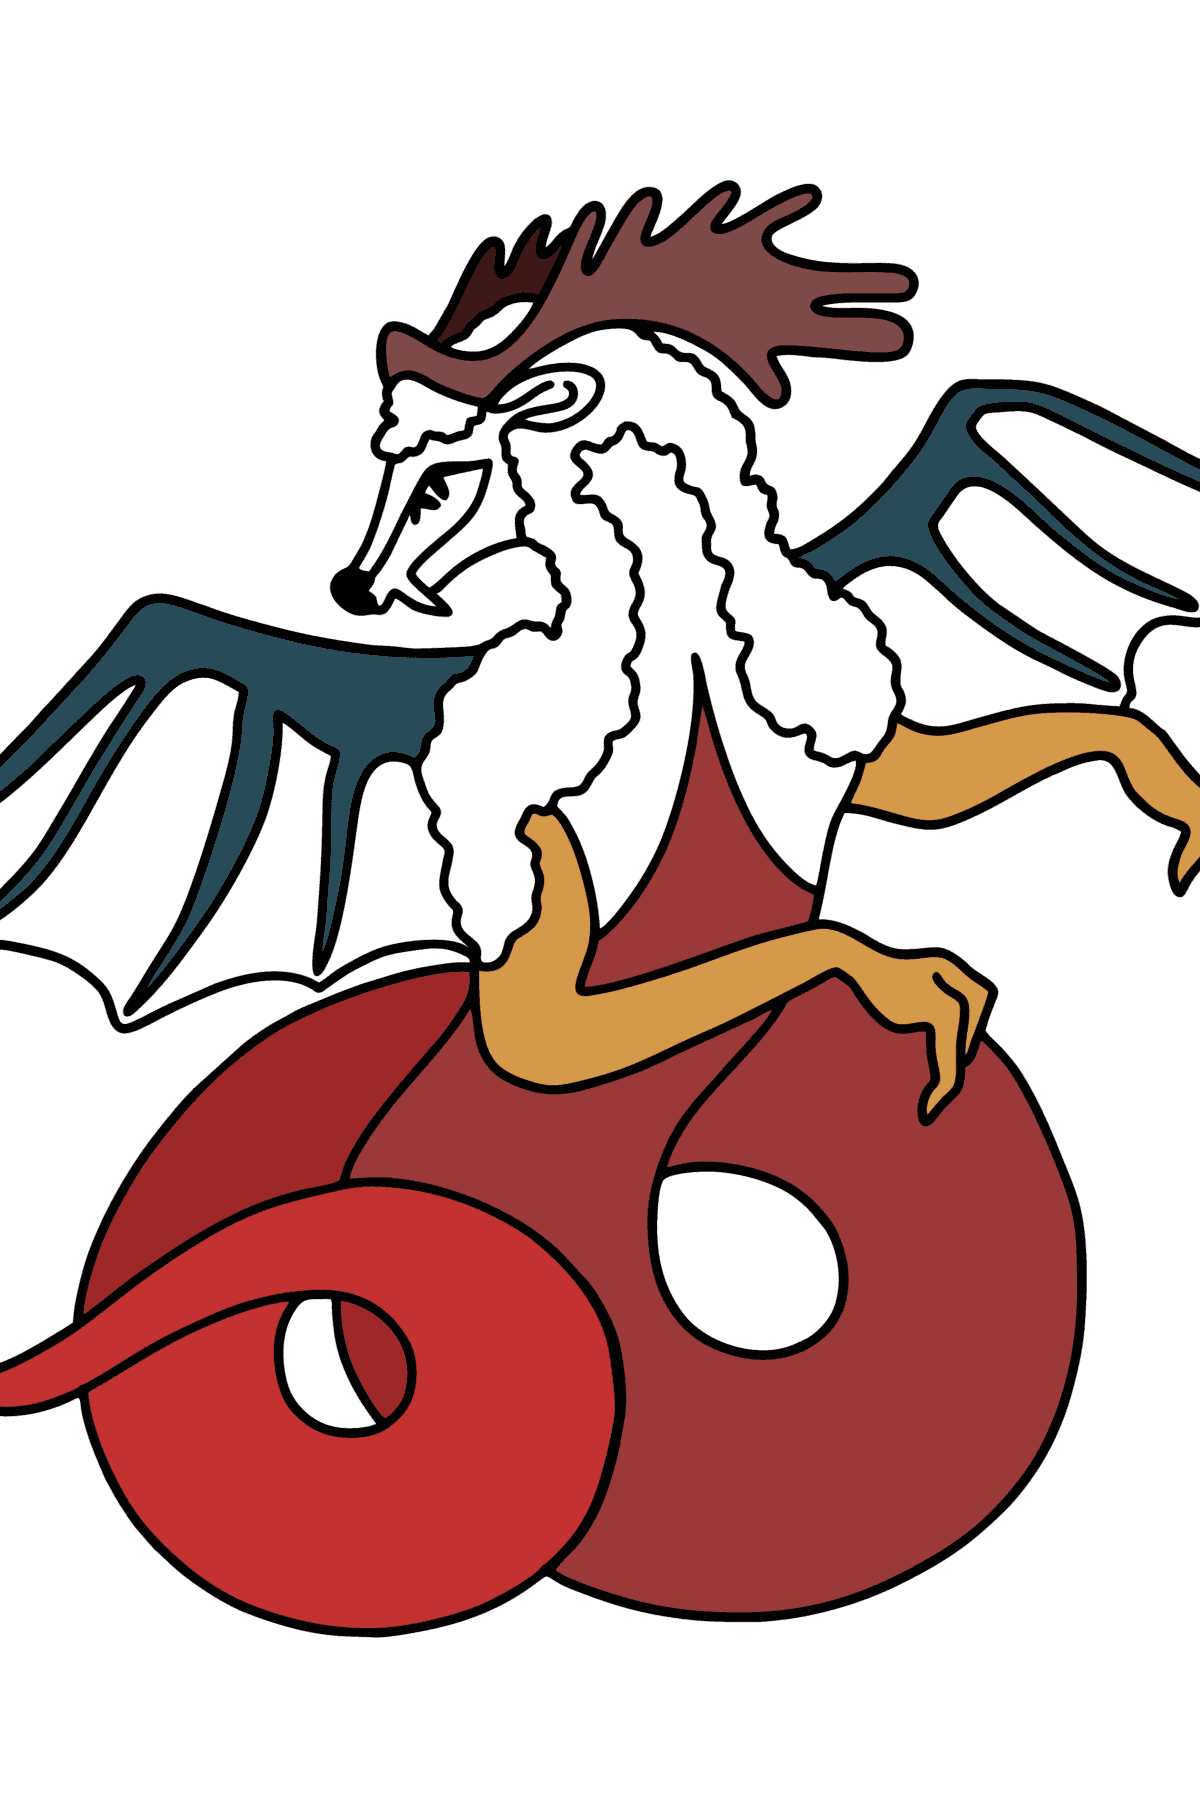 Desen de colorat frumos dragon - Desene de colorat pentru copii